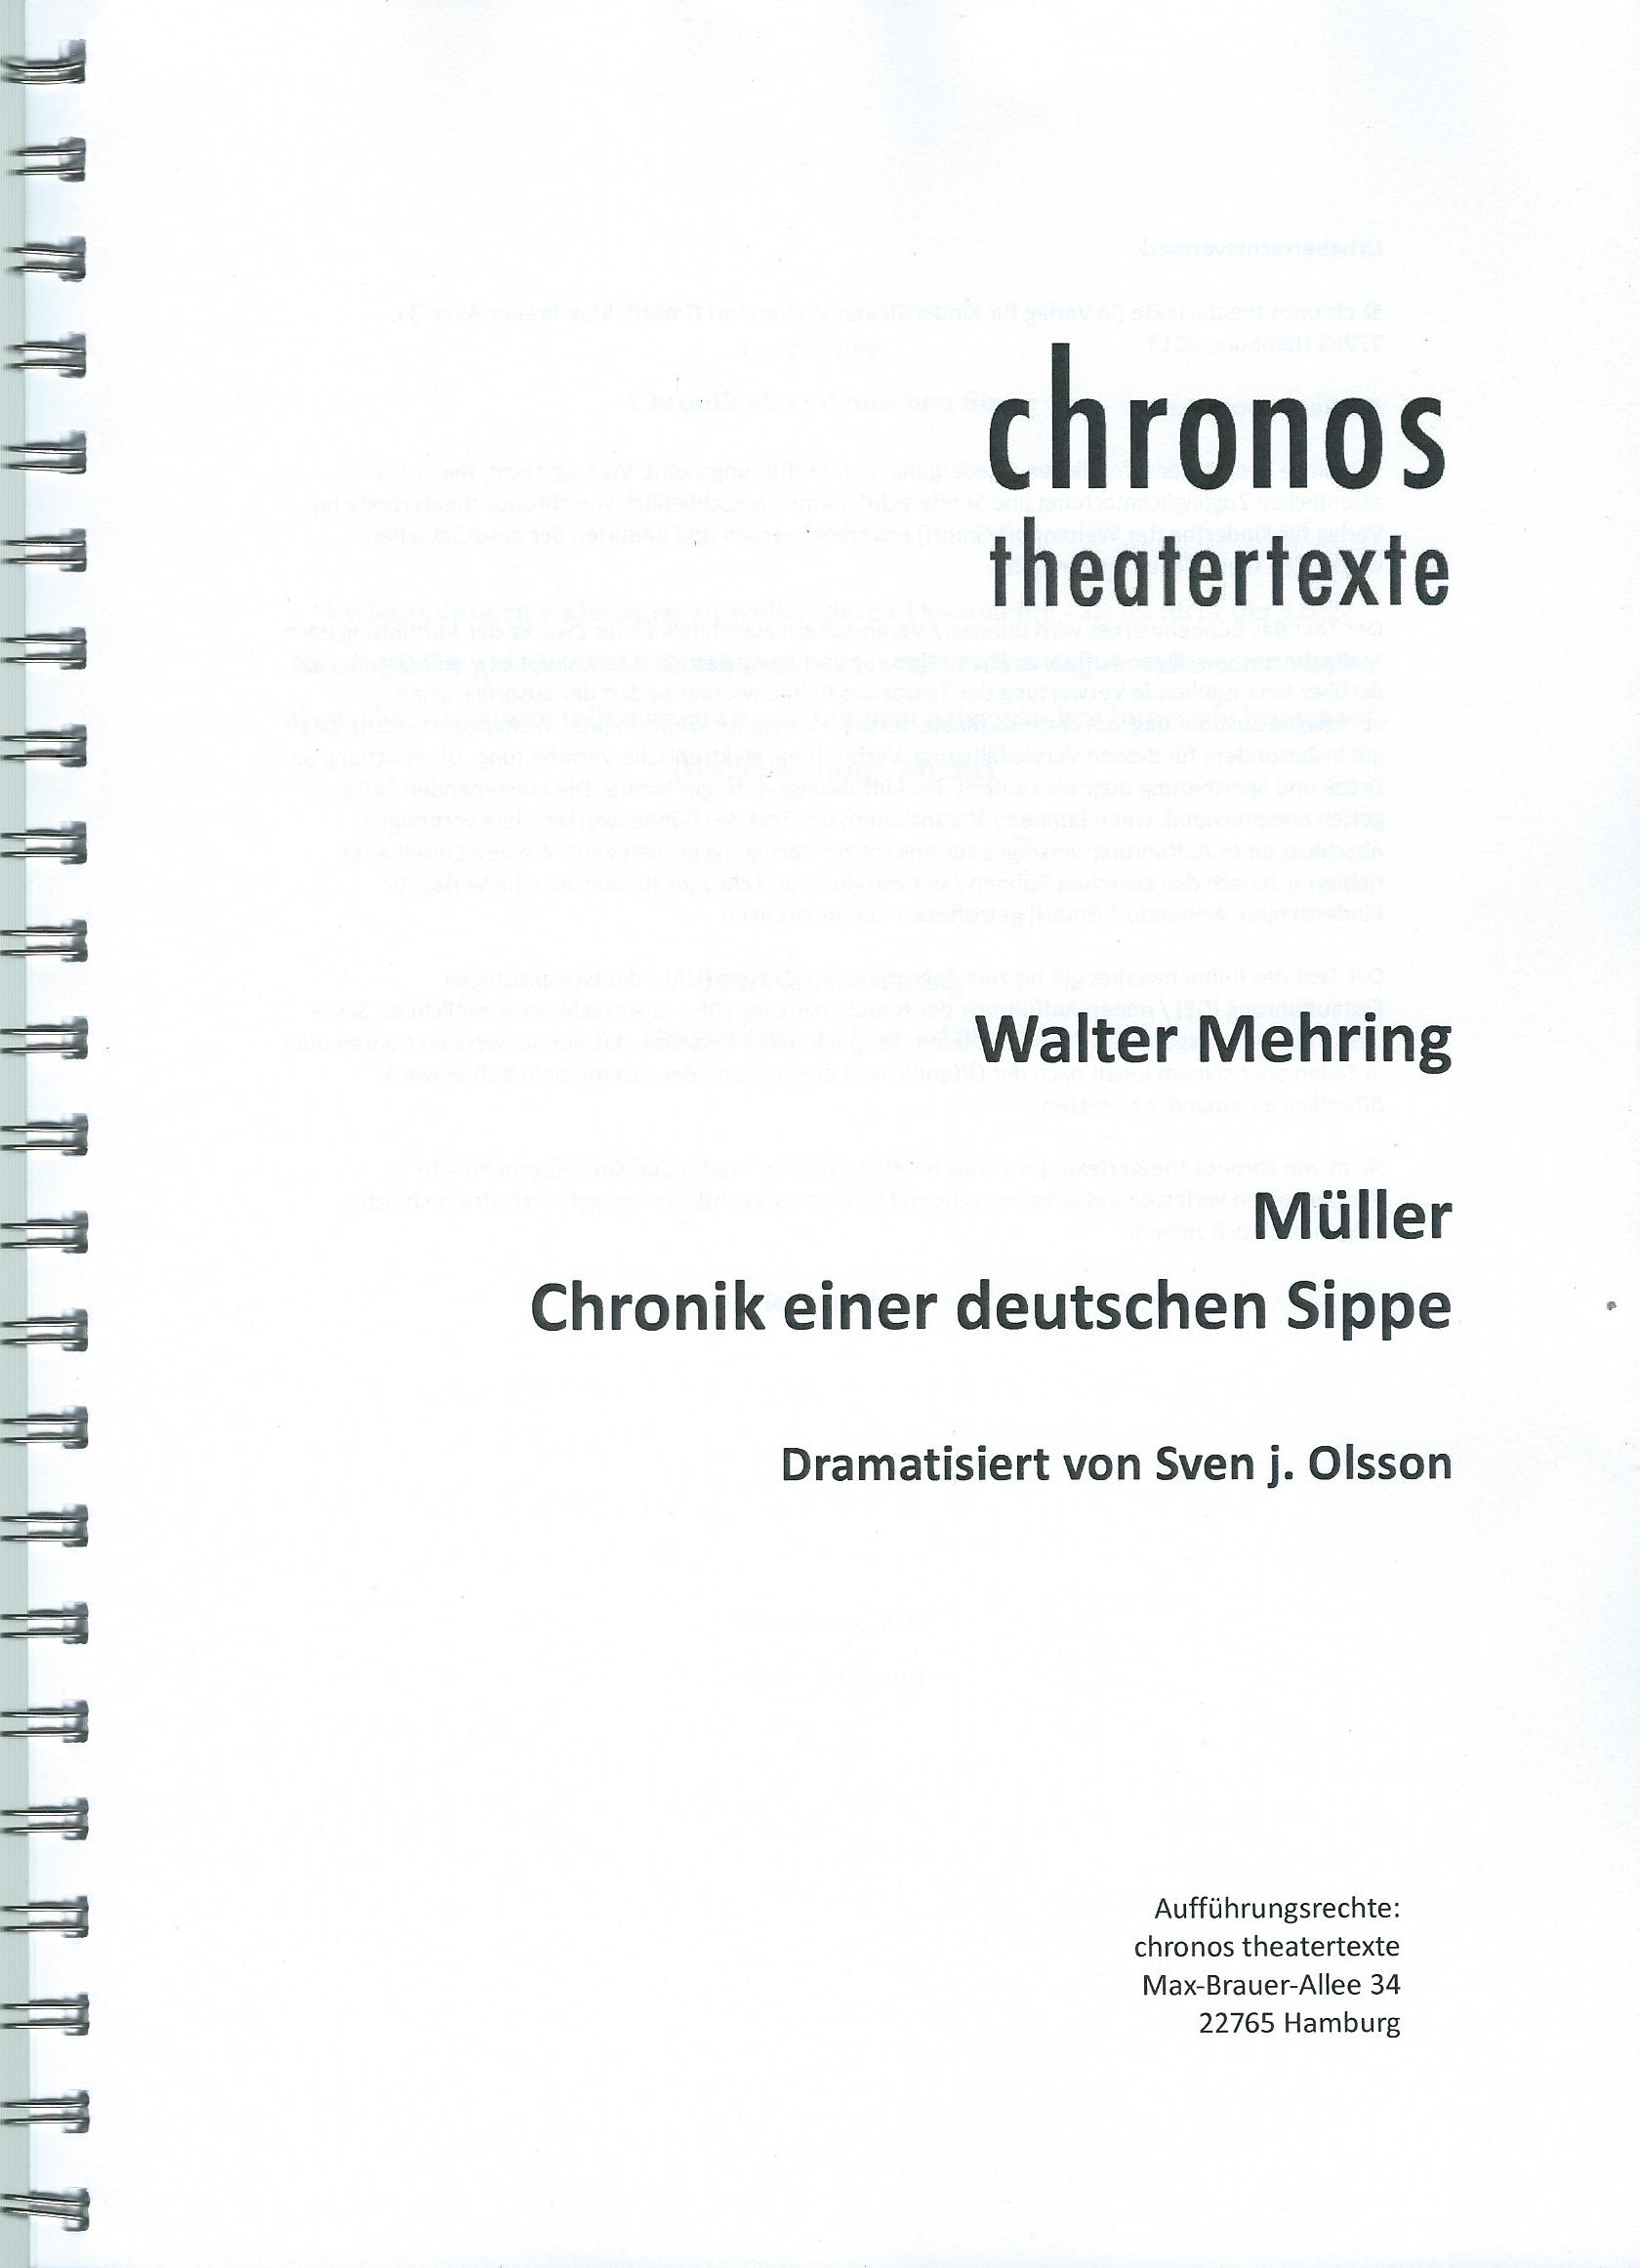 Müller - Chronik einer deutschen Sippe, dramatisiert von Sven j. Olsson (2013)